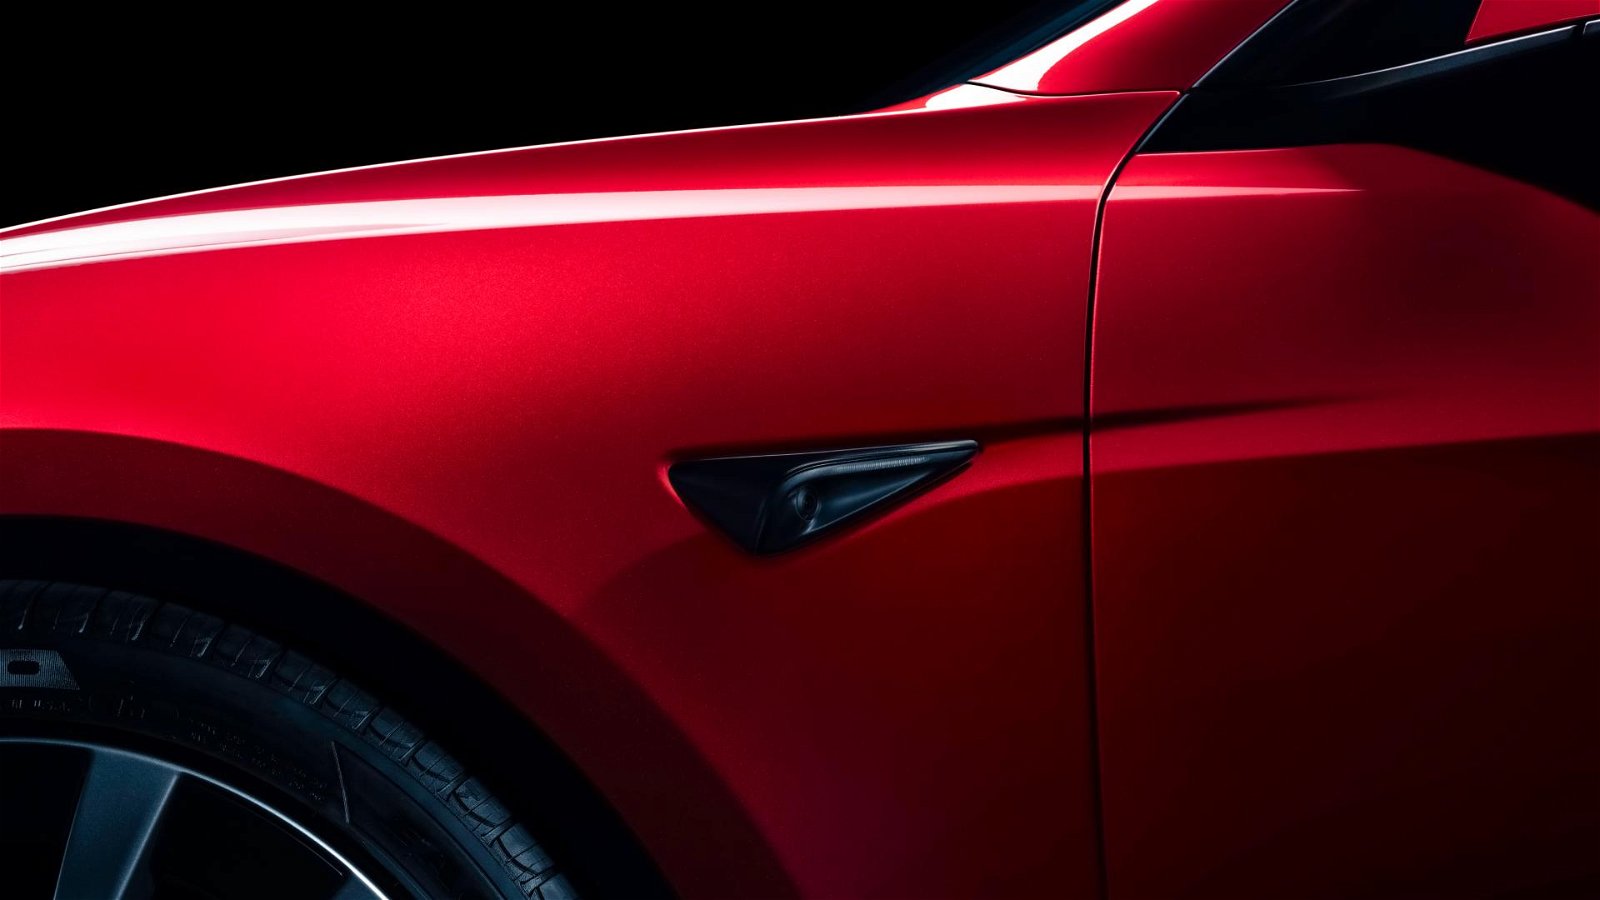 Tesla Model 3 Highland: Großes Facelift schon in Produktion? -  Elektromobilität (E-Mobilität), Unternehmens-, Wirtschaft- und  Branchen-Nachrichten (sonst.), News, Unterwegs auf der Autobahn - Reisen, Rasten, Tanken, Shoppen, Erholen